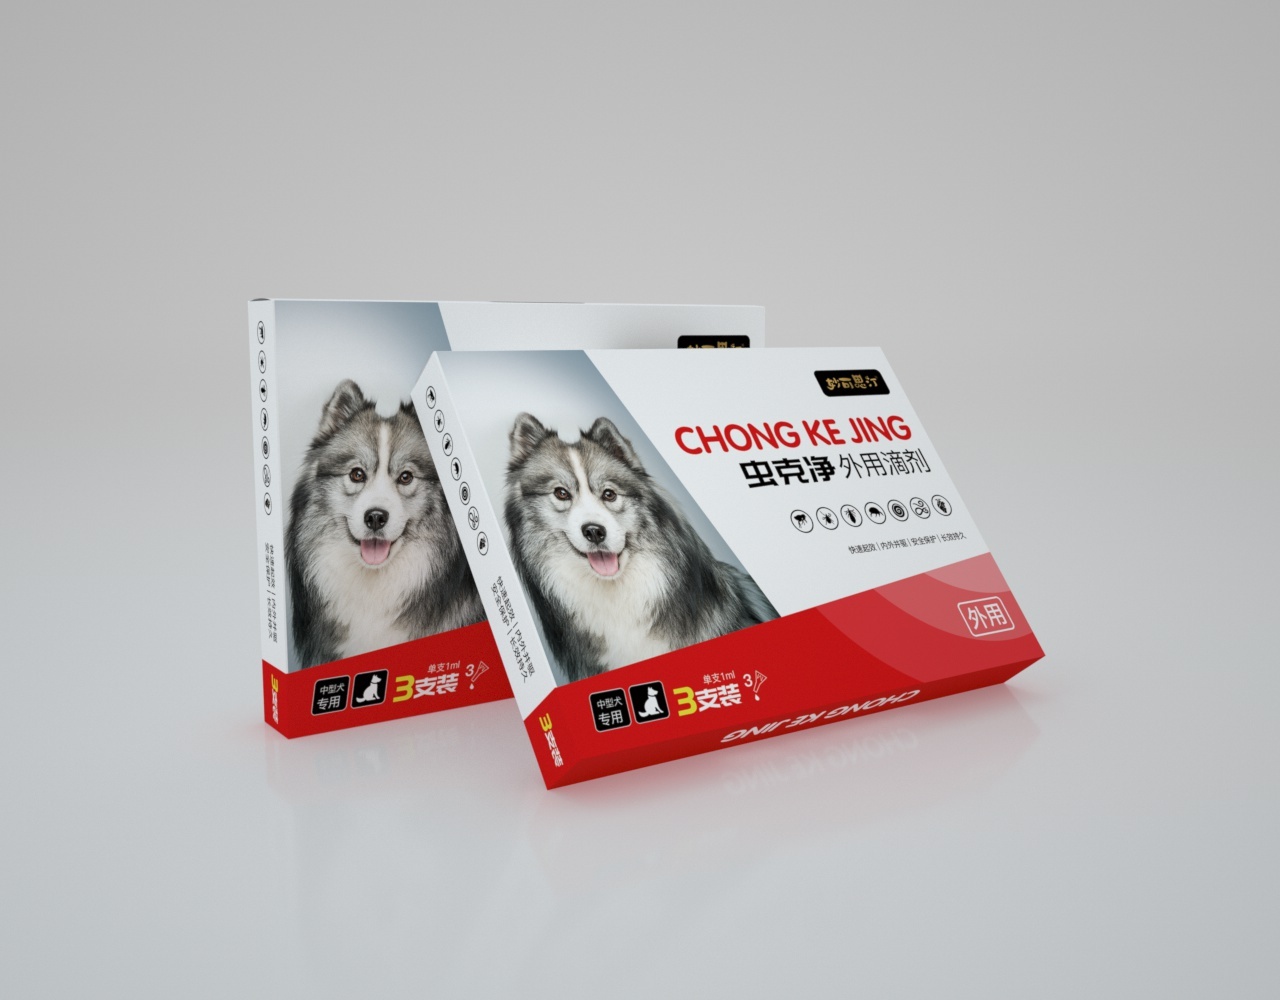 【药品包装设计】虫克清宠物驱虫药系列包装设计图9